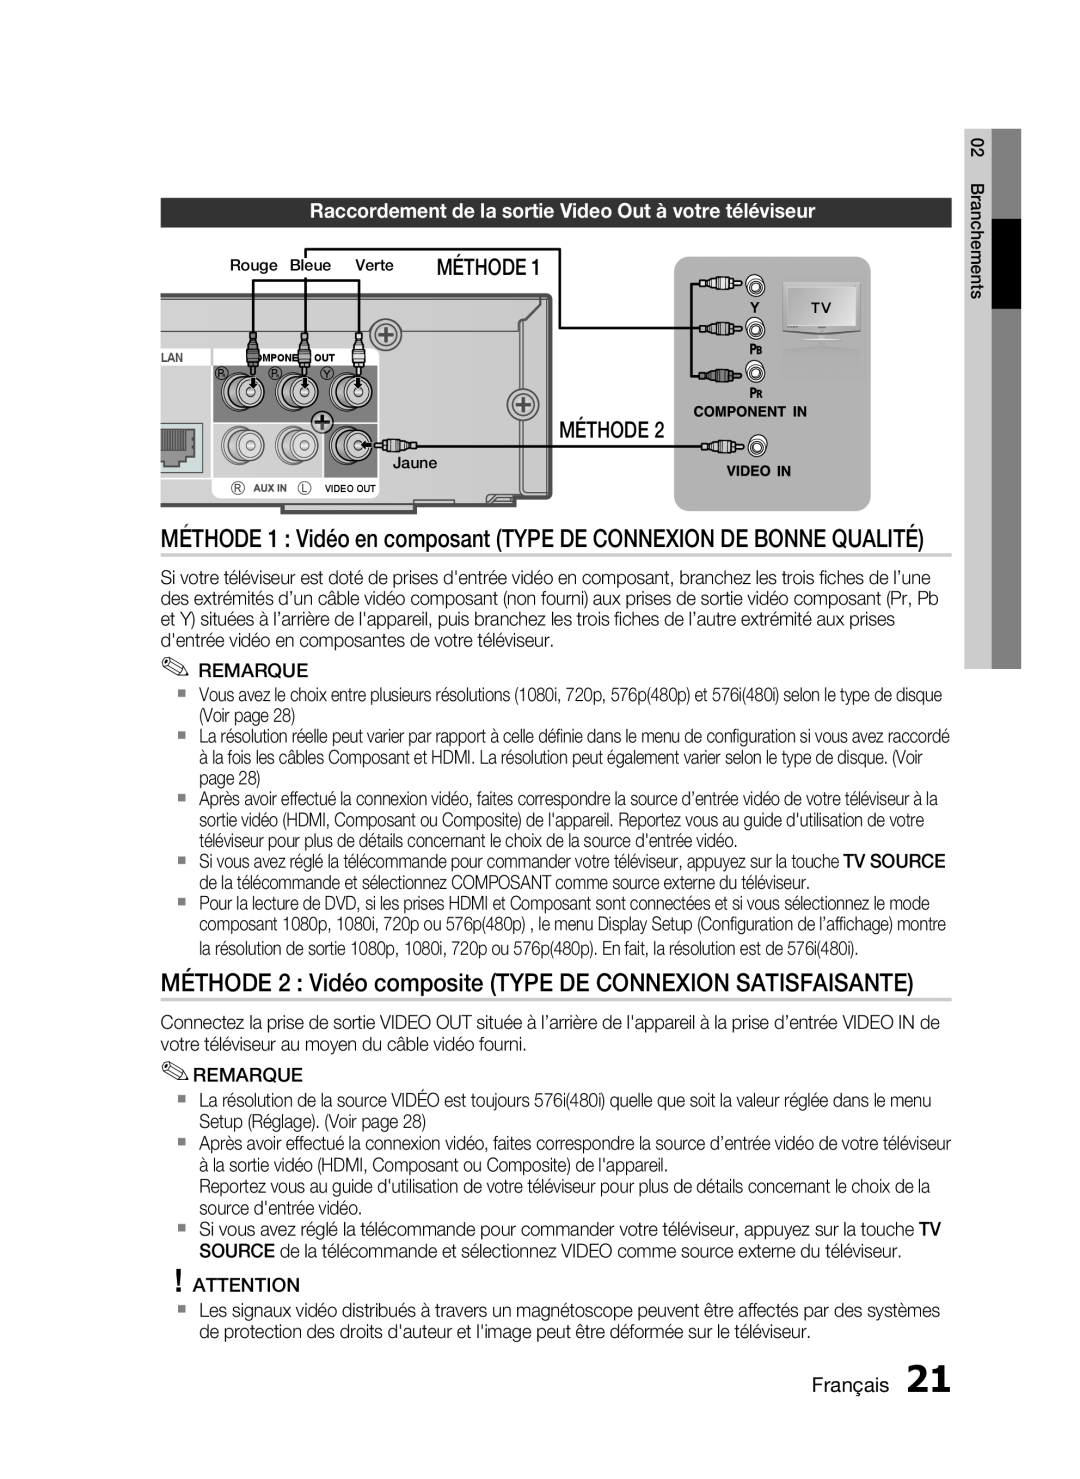 Samsung HT-C6200/XEF manual MÉTHODE 2 Vidéo composite TYPE DE CONNEXION SATISFAISANTE, Méthode, Français 